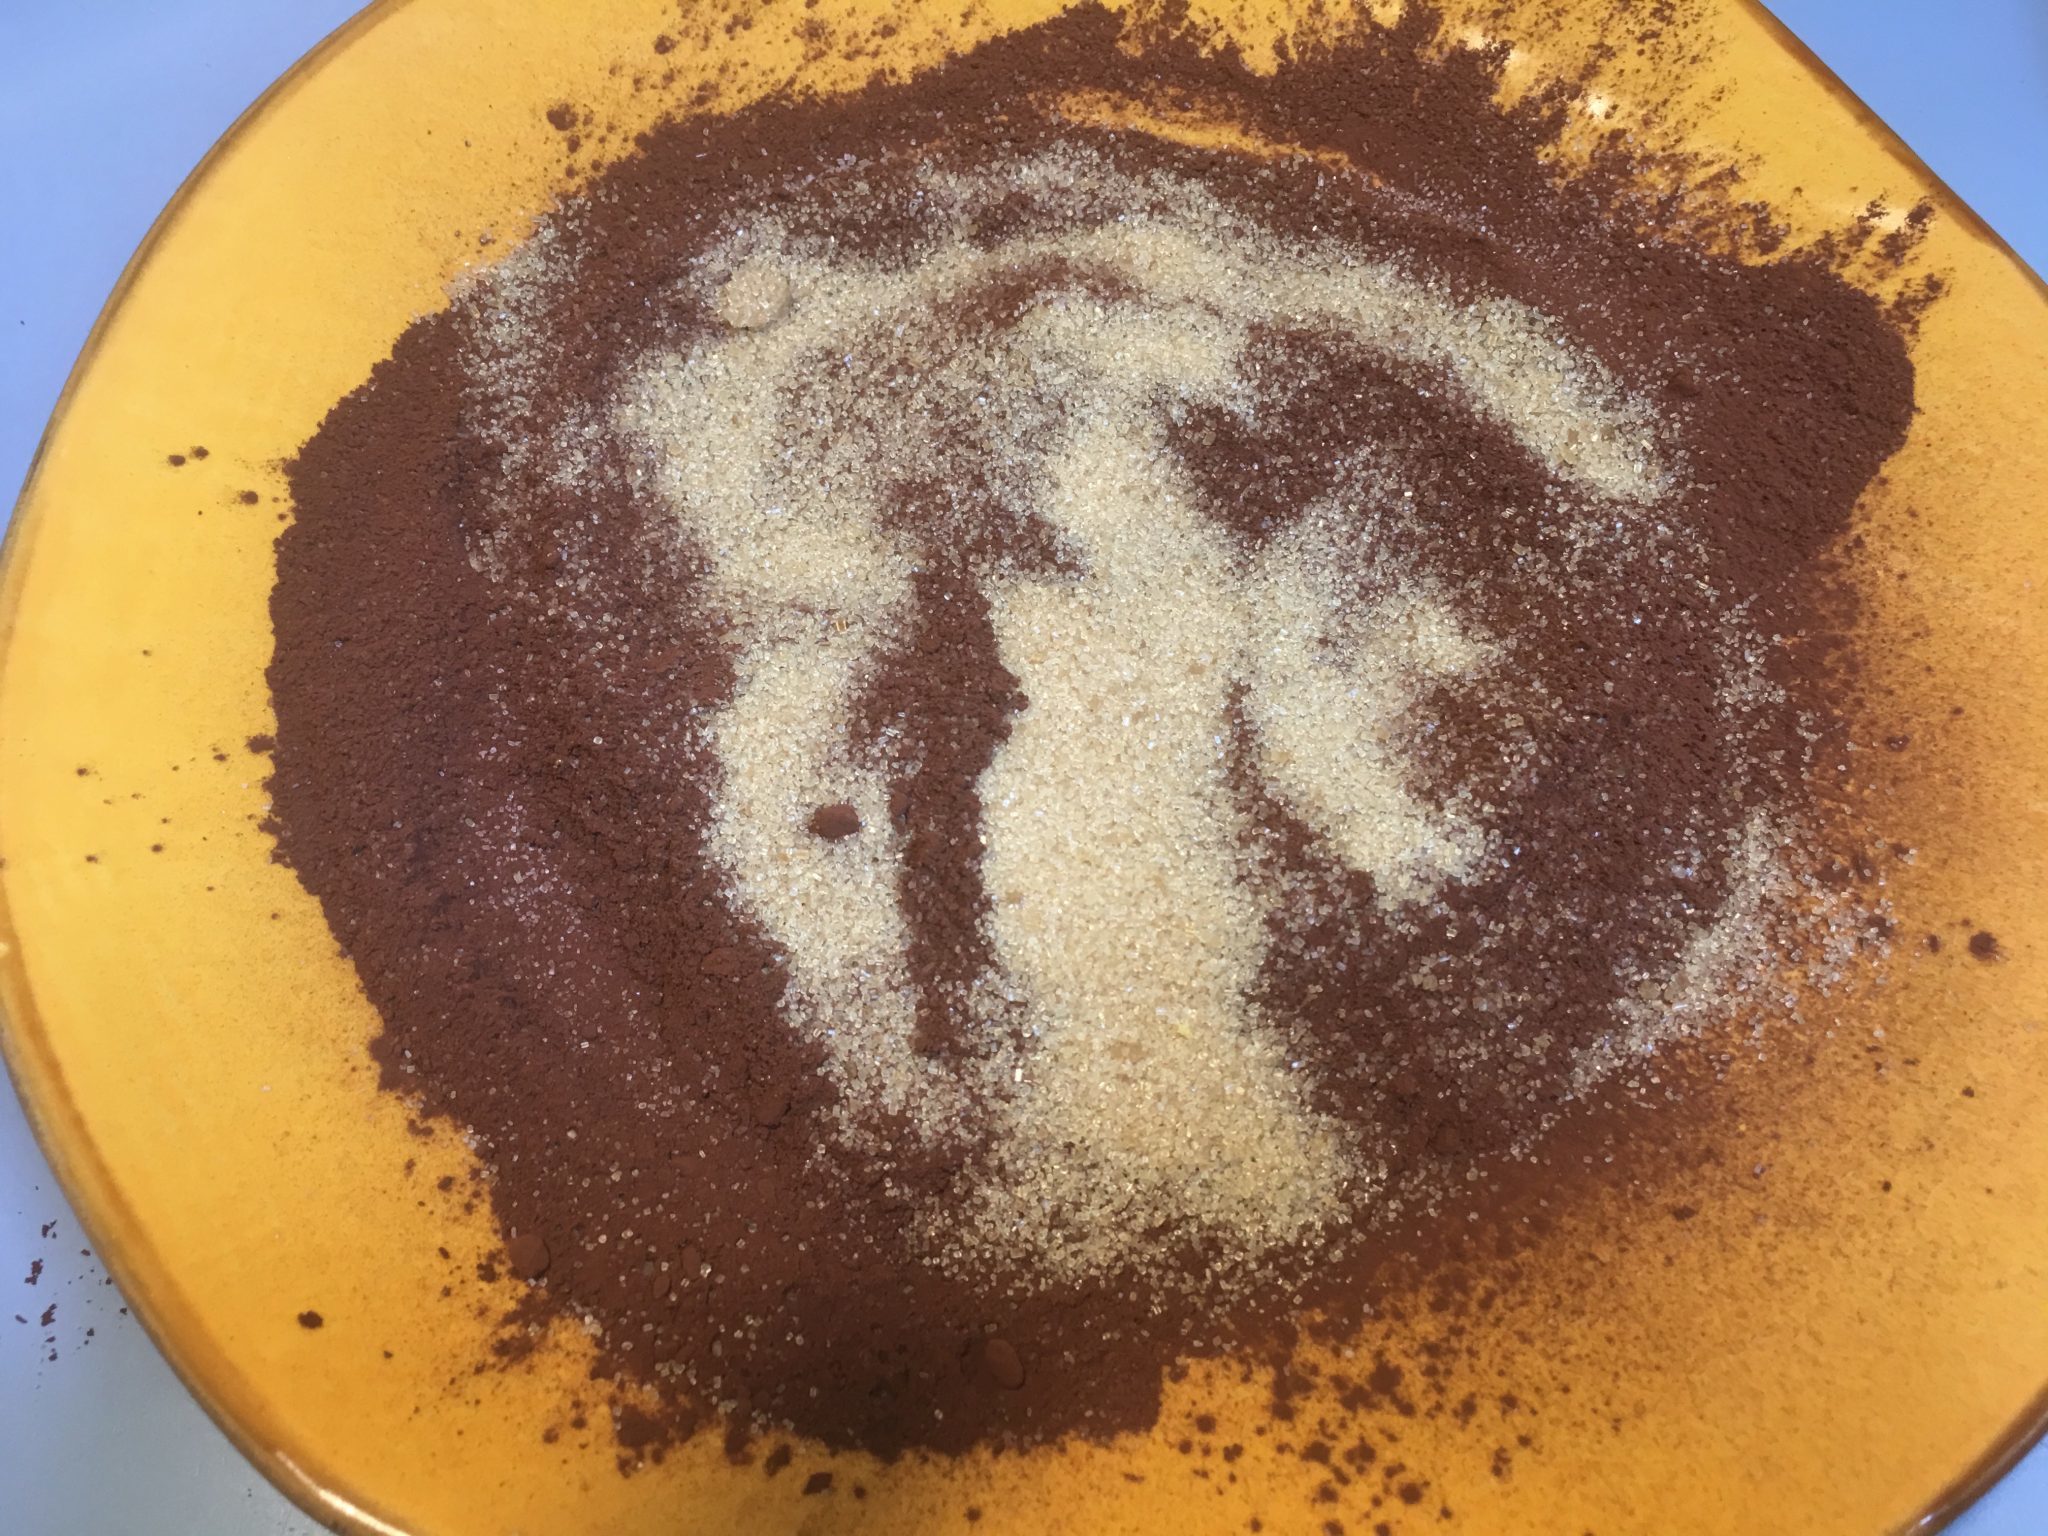 Tartufi al cioccolato - lo zucchero di canna aggiunto al cacao